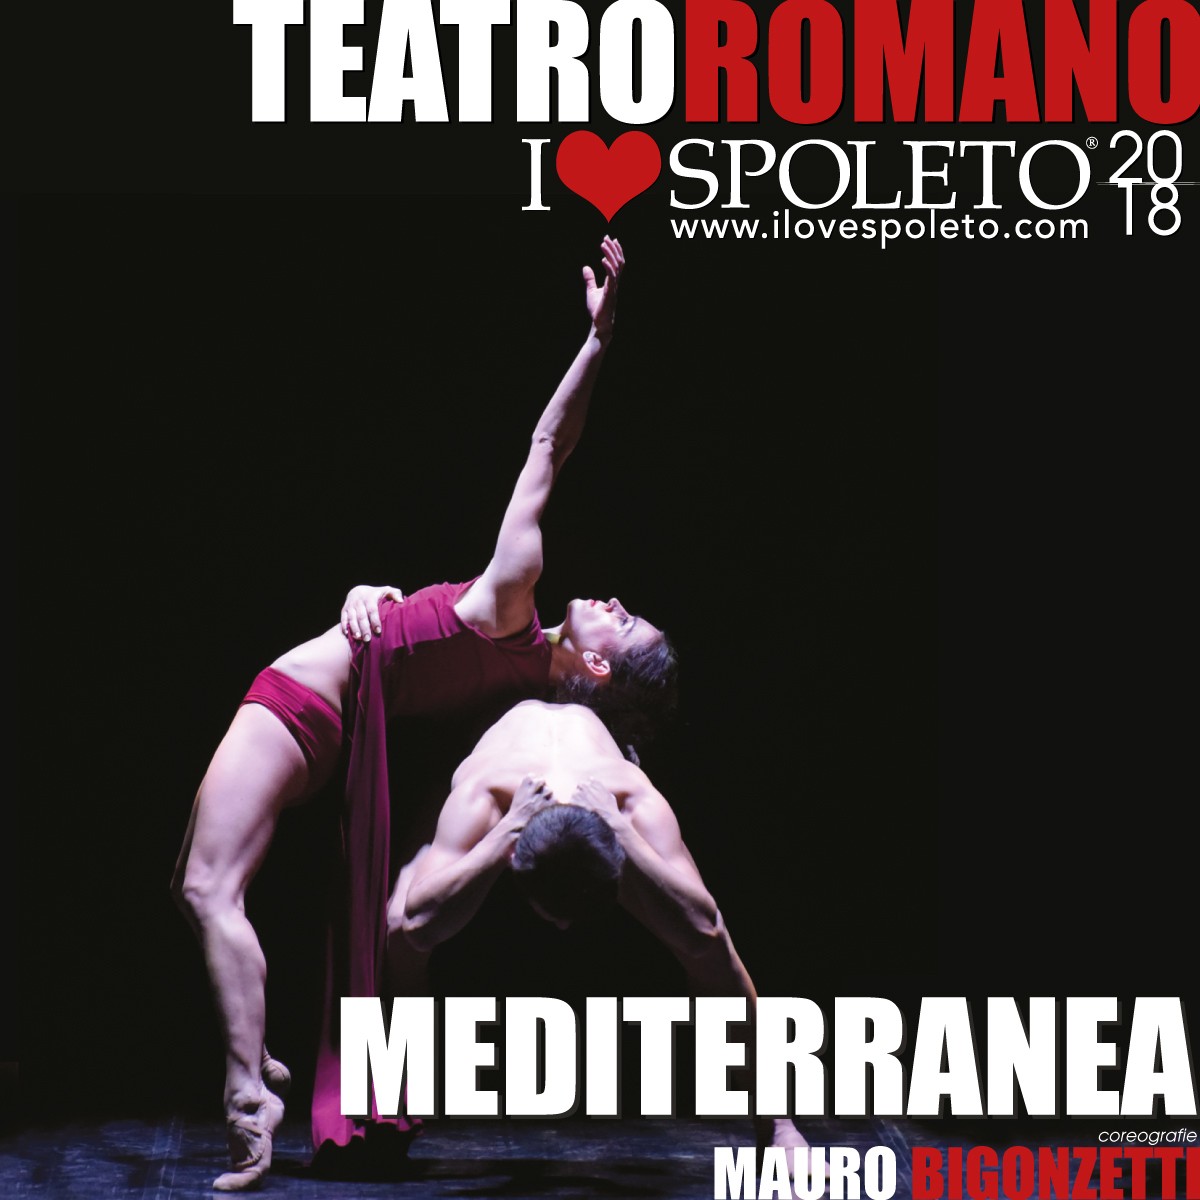 Mediterranea Il balletto italiano che ha conquistato il mondo 2018